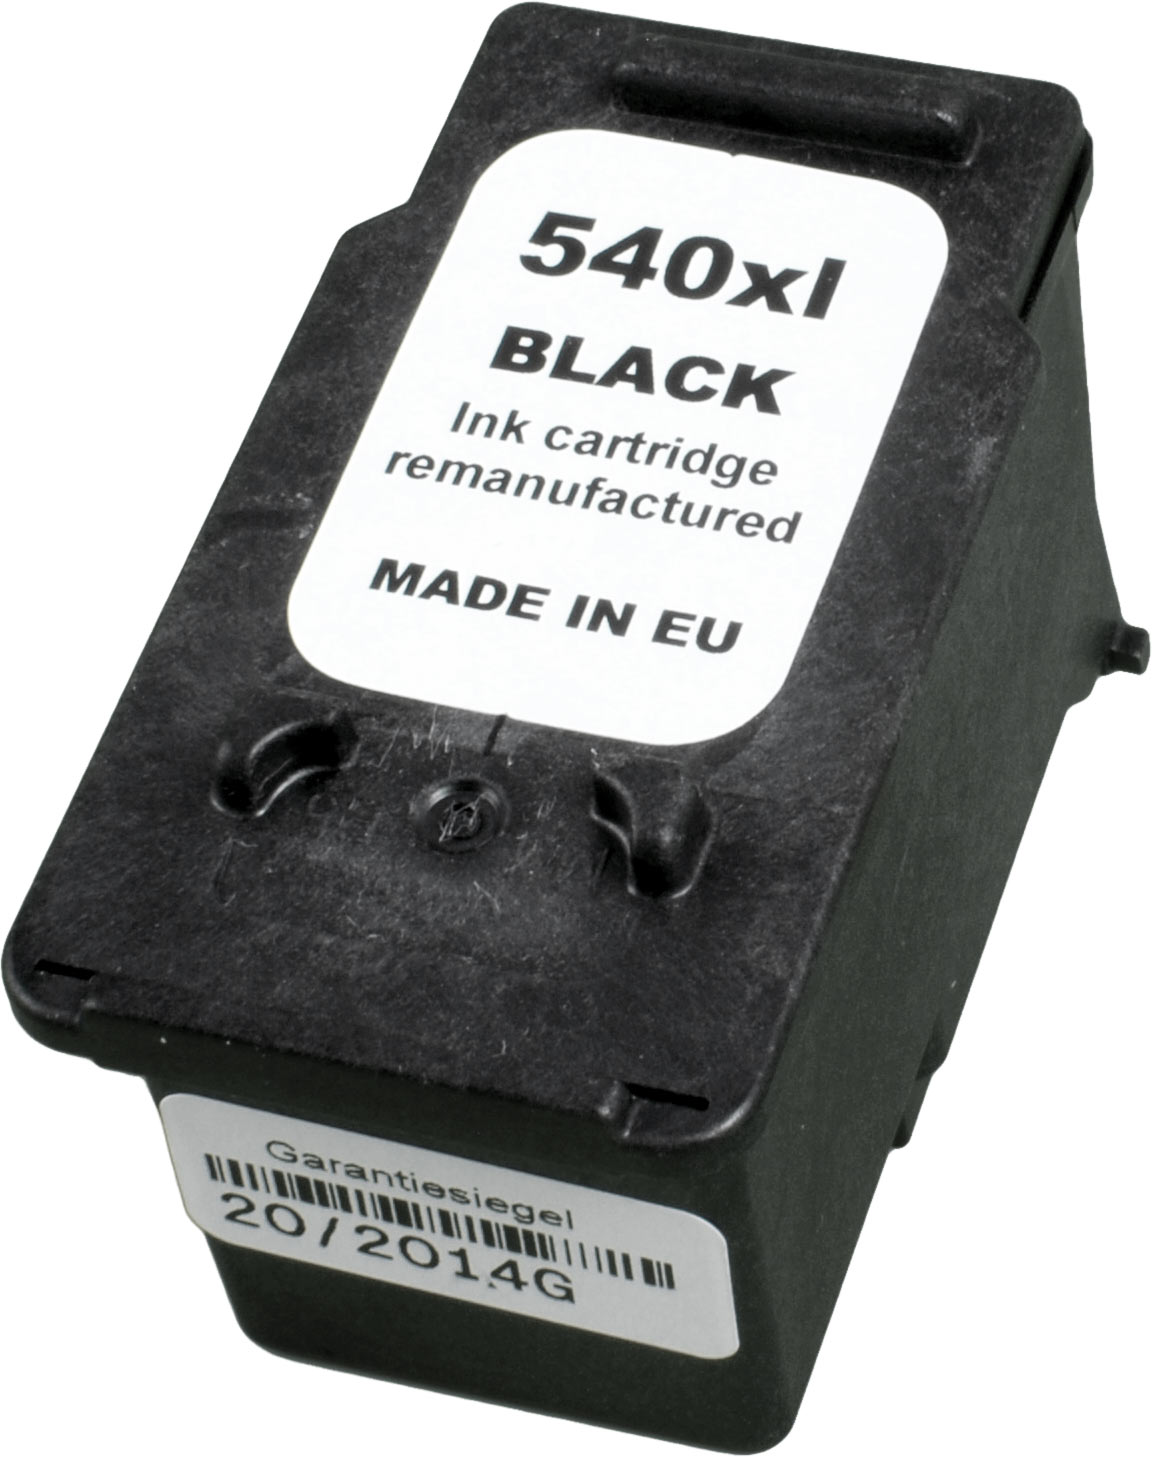 Ampertec Tinte für Canon PG-540XL  schwarz